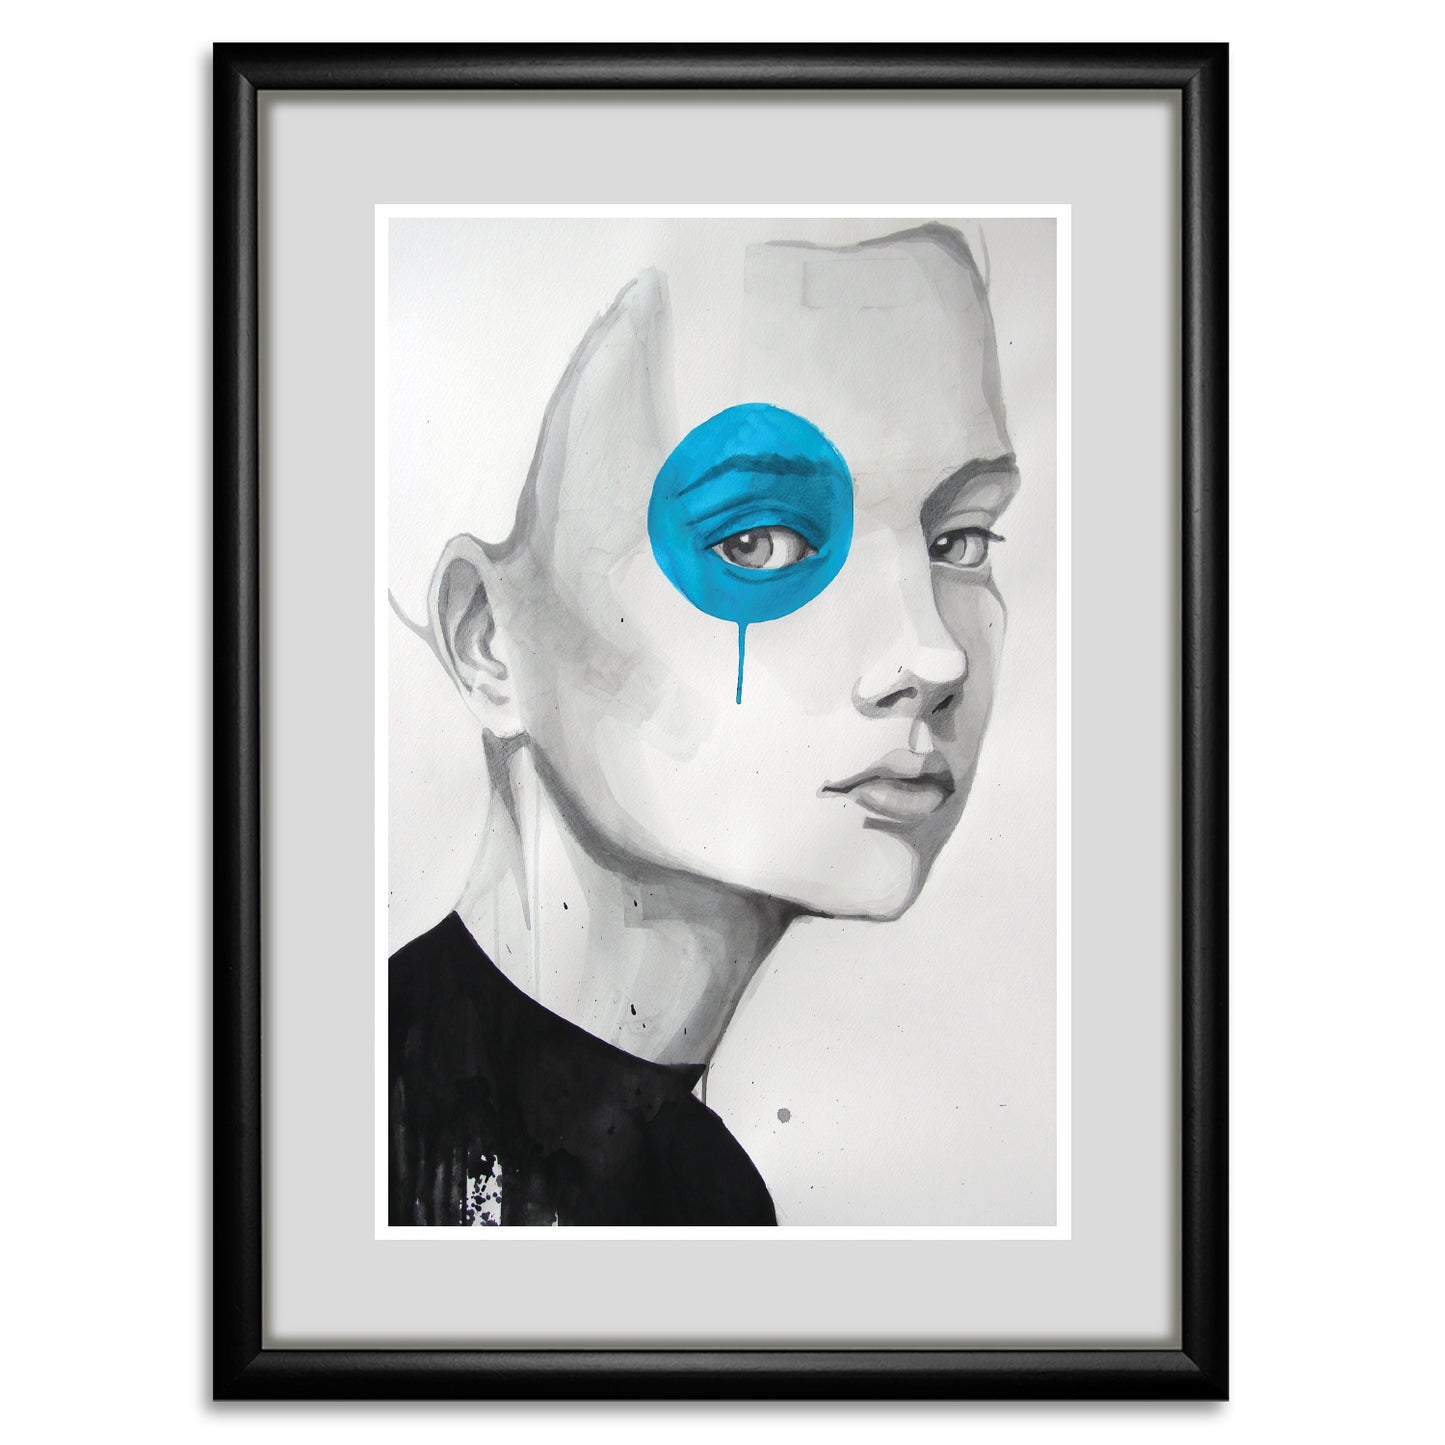 Rahmenbild - Blue Eye